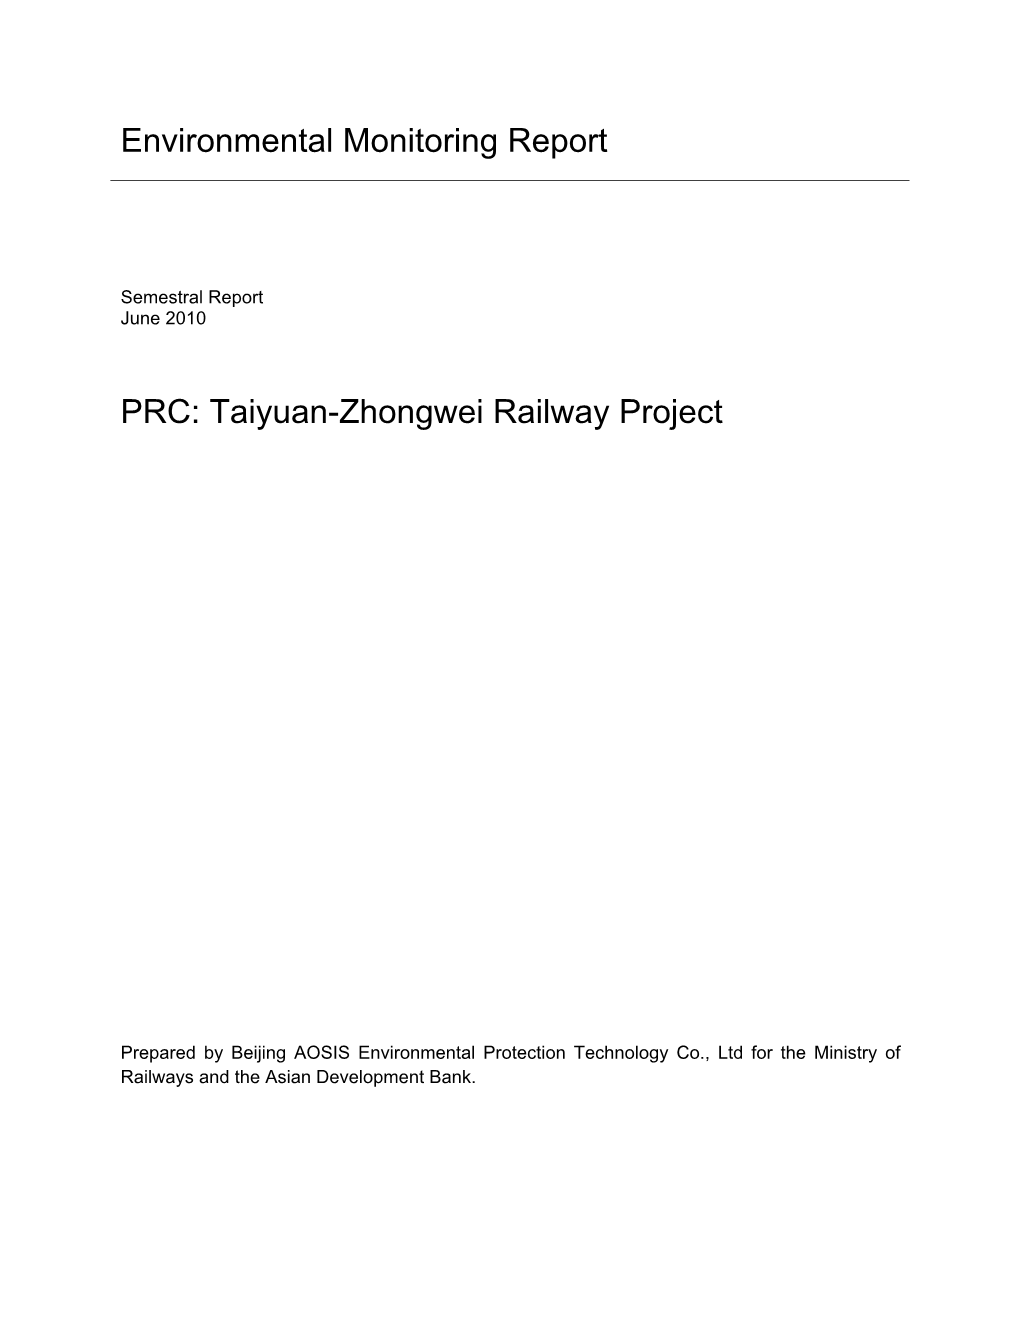 PRC: Taiyuan-Zhongwei Railway Project